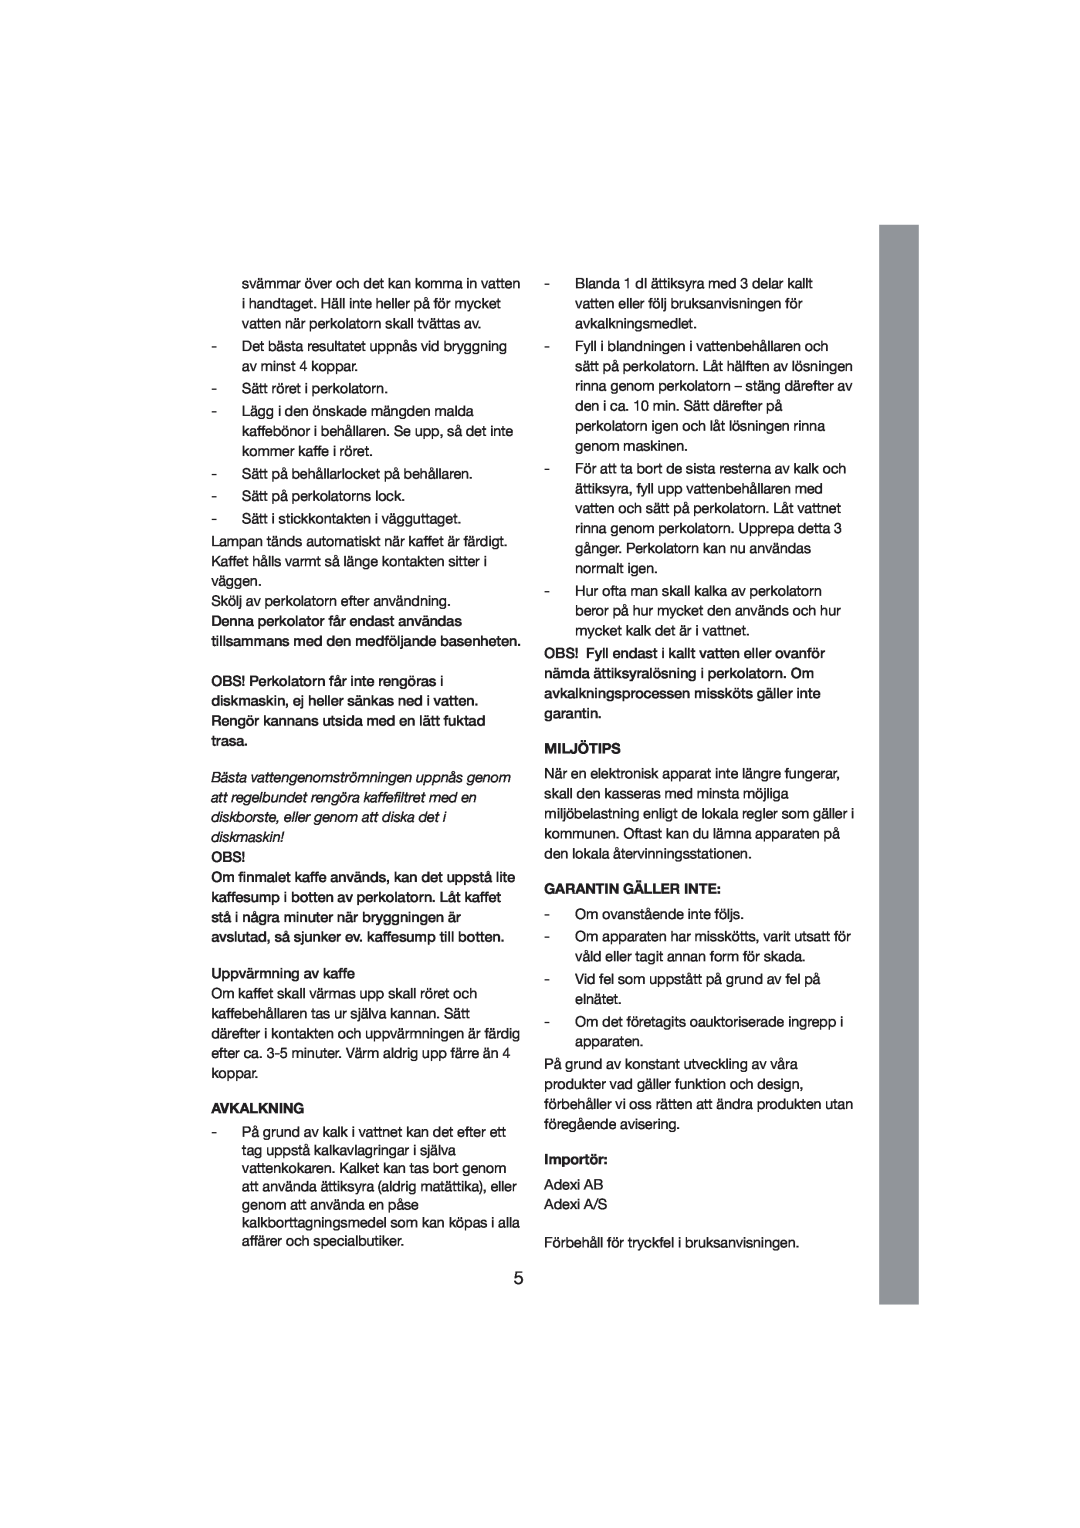 Exido 245-011/012 manual Avkalkning, Miljötips, Garantin Gäller Inte, Importör 